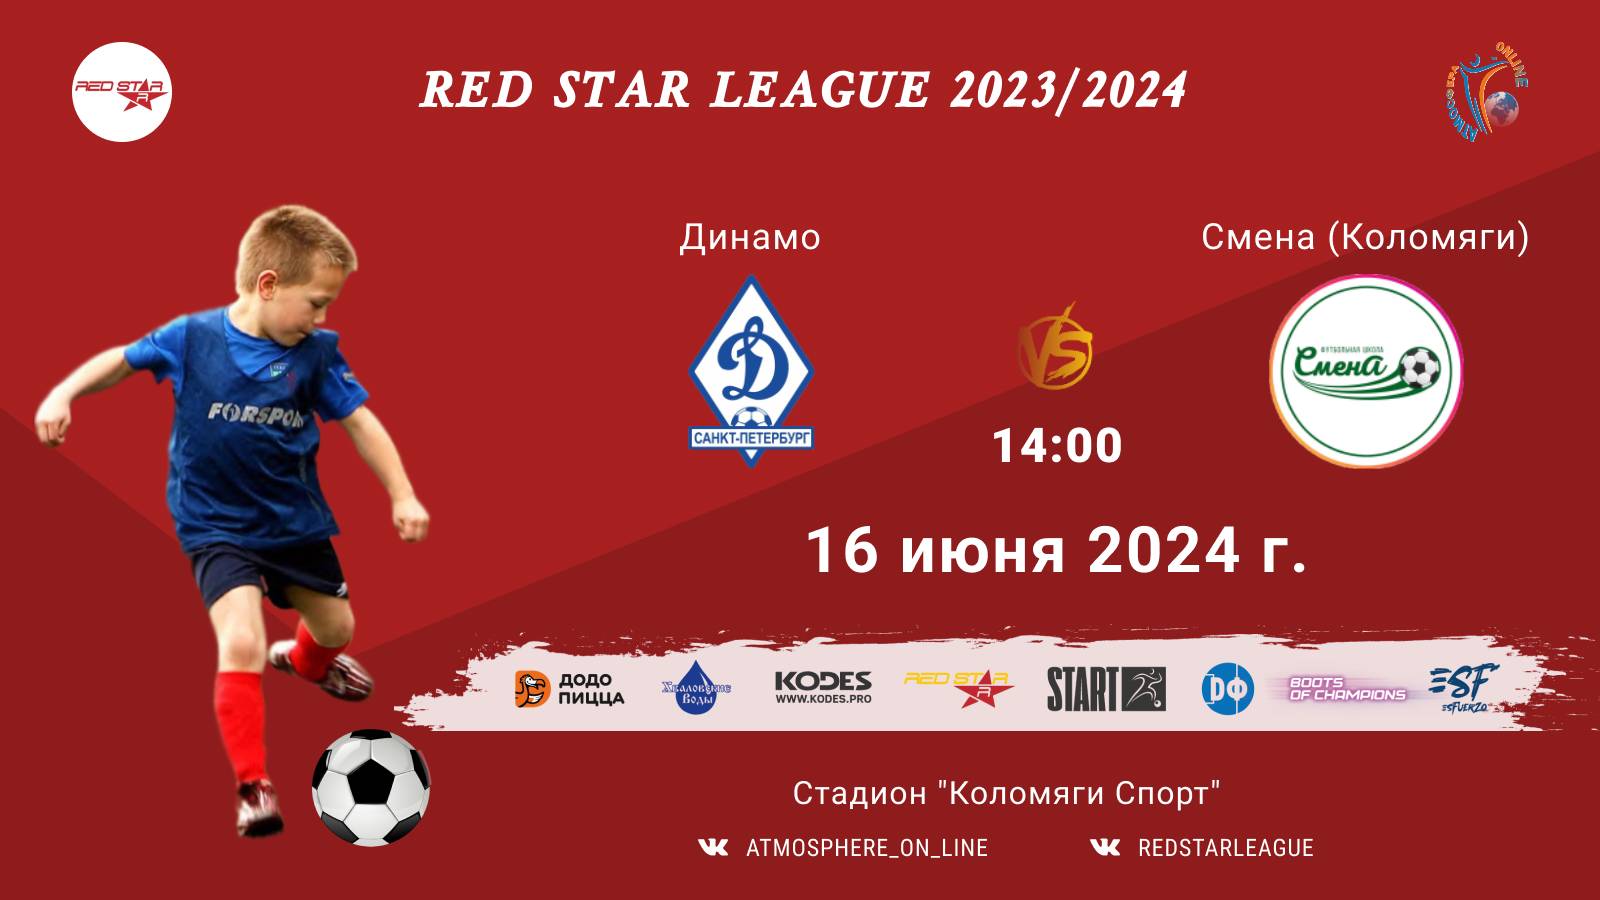 ФК "Динамо" - ФК "Смена" (Коломяги)/Red Star League, 16-06-2024 14:00